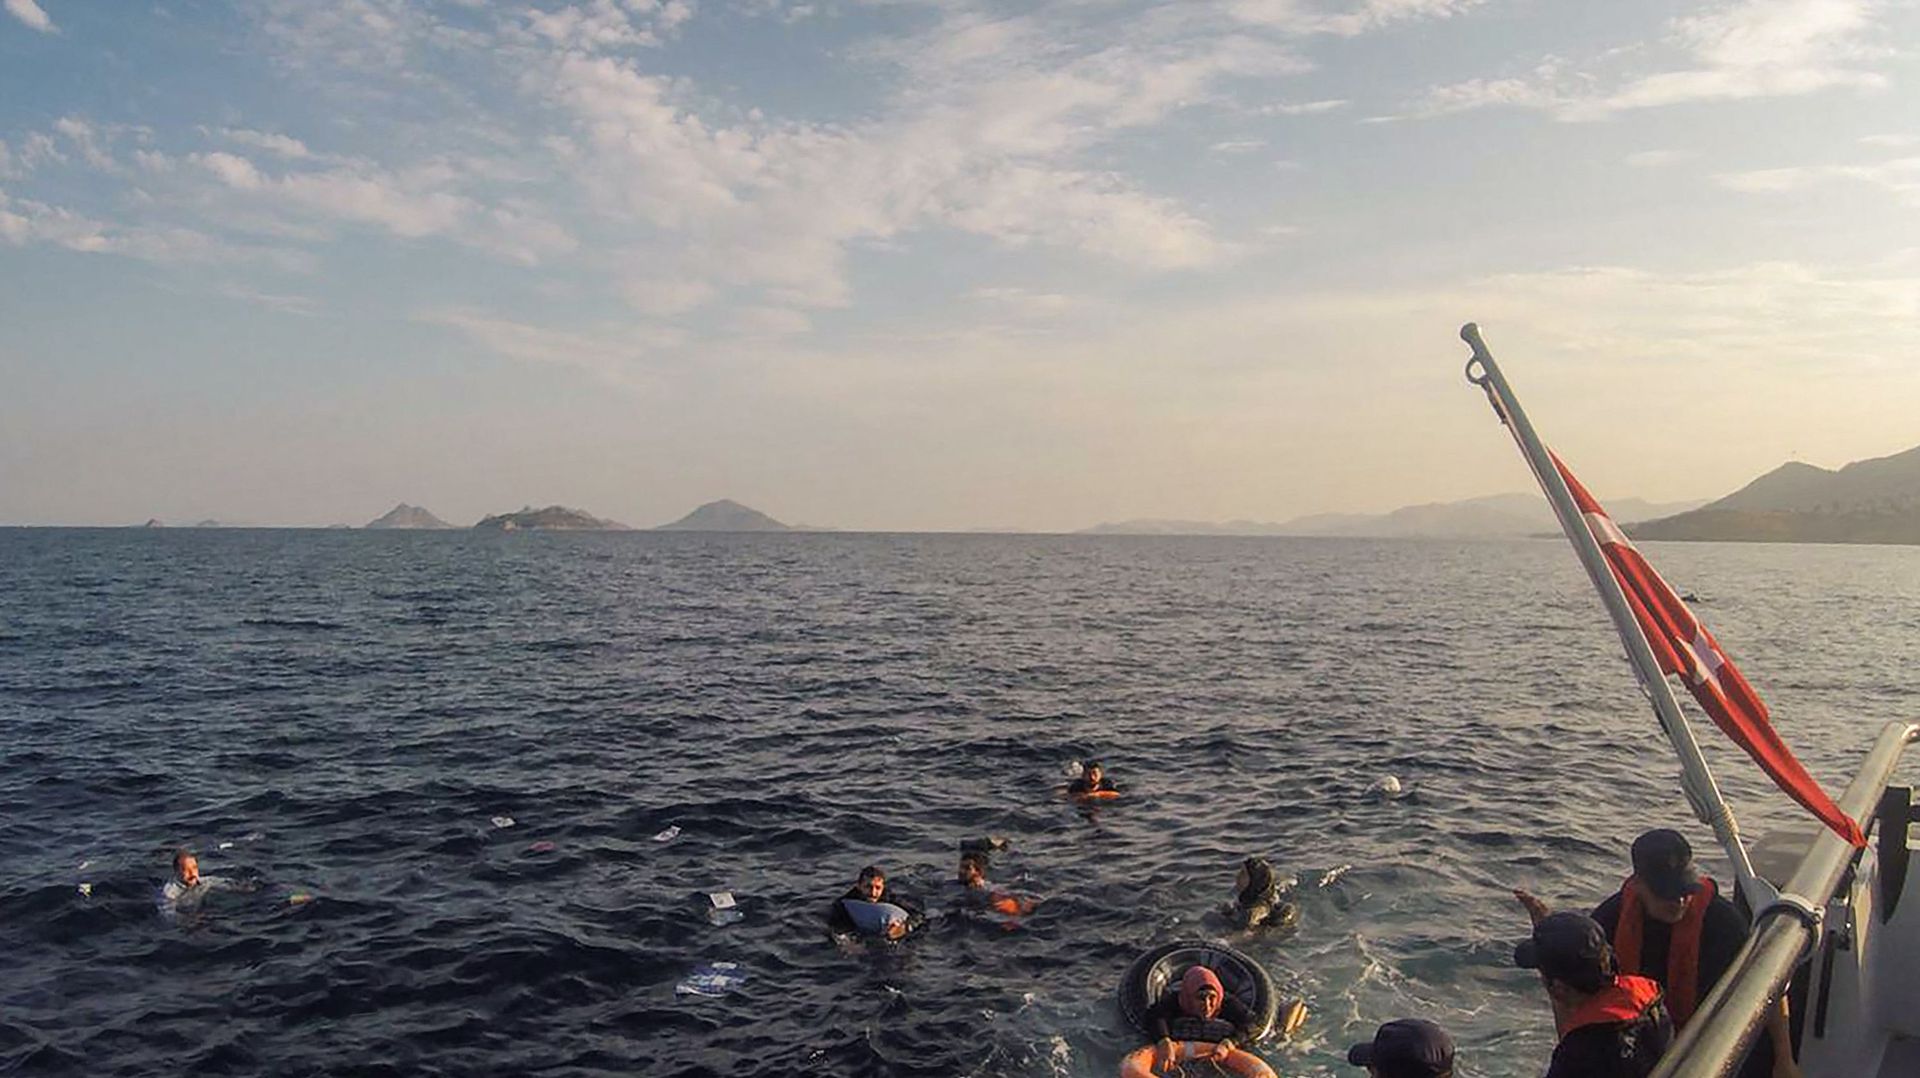 17 juin 2019, par les garde-côtes turcs montrent des migrants illégaux en train d'être secourus après le naufrage de leur bateau dans la mer Égée, au large des côtes du sud-ouest de la Turquie.  L'incident a eu lieu à quelques kilomètres (miles) de l'île 